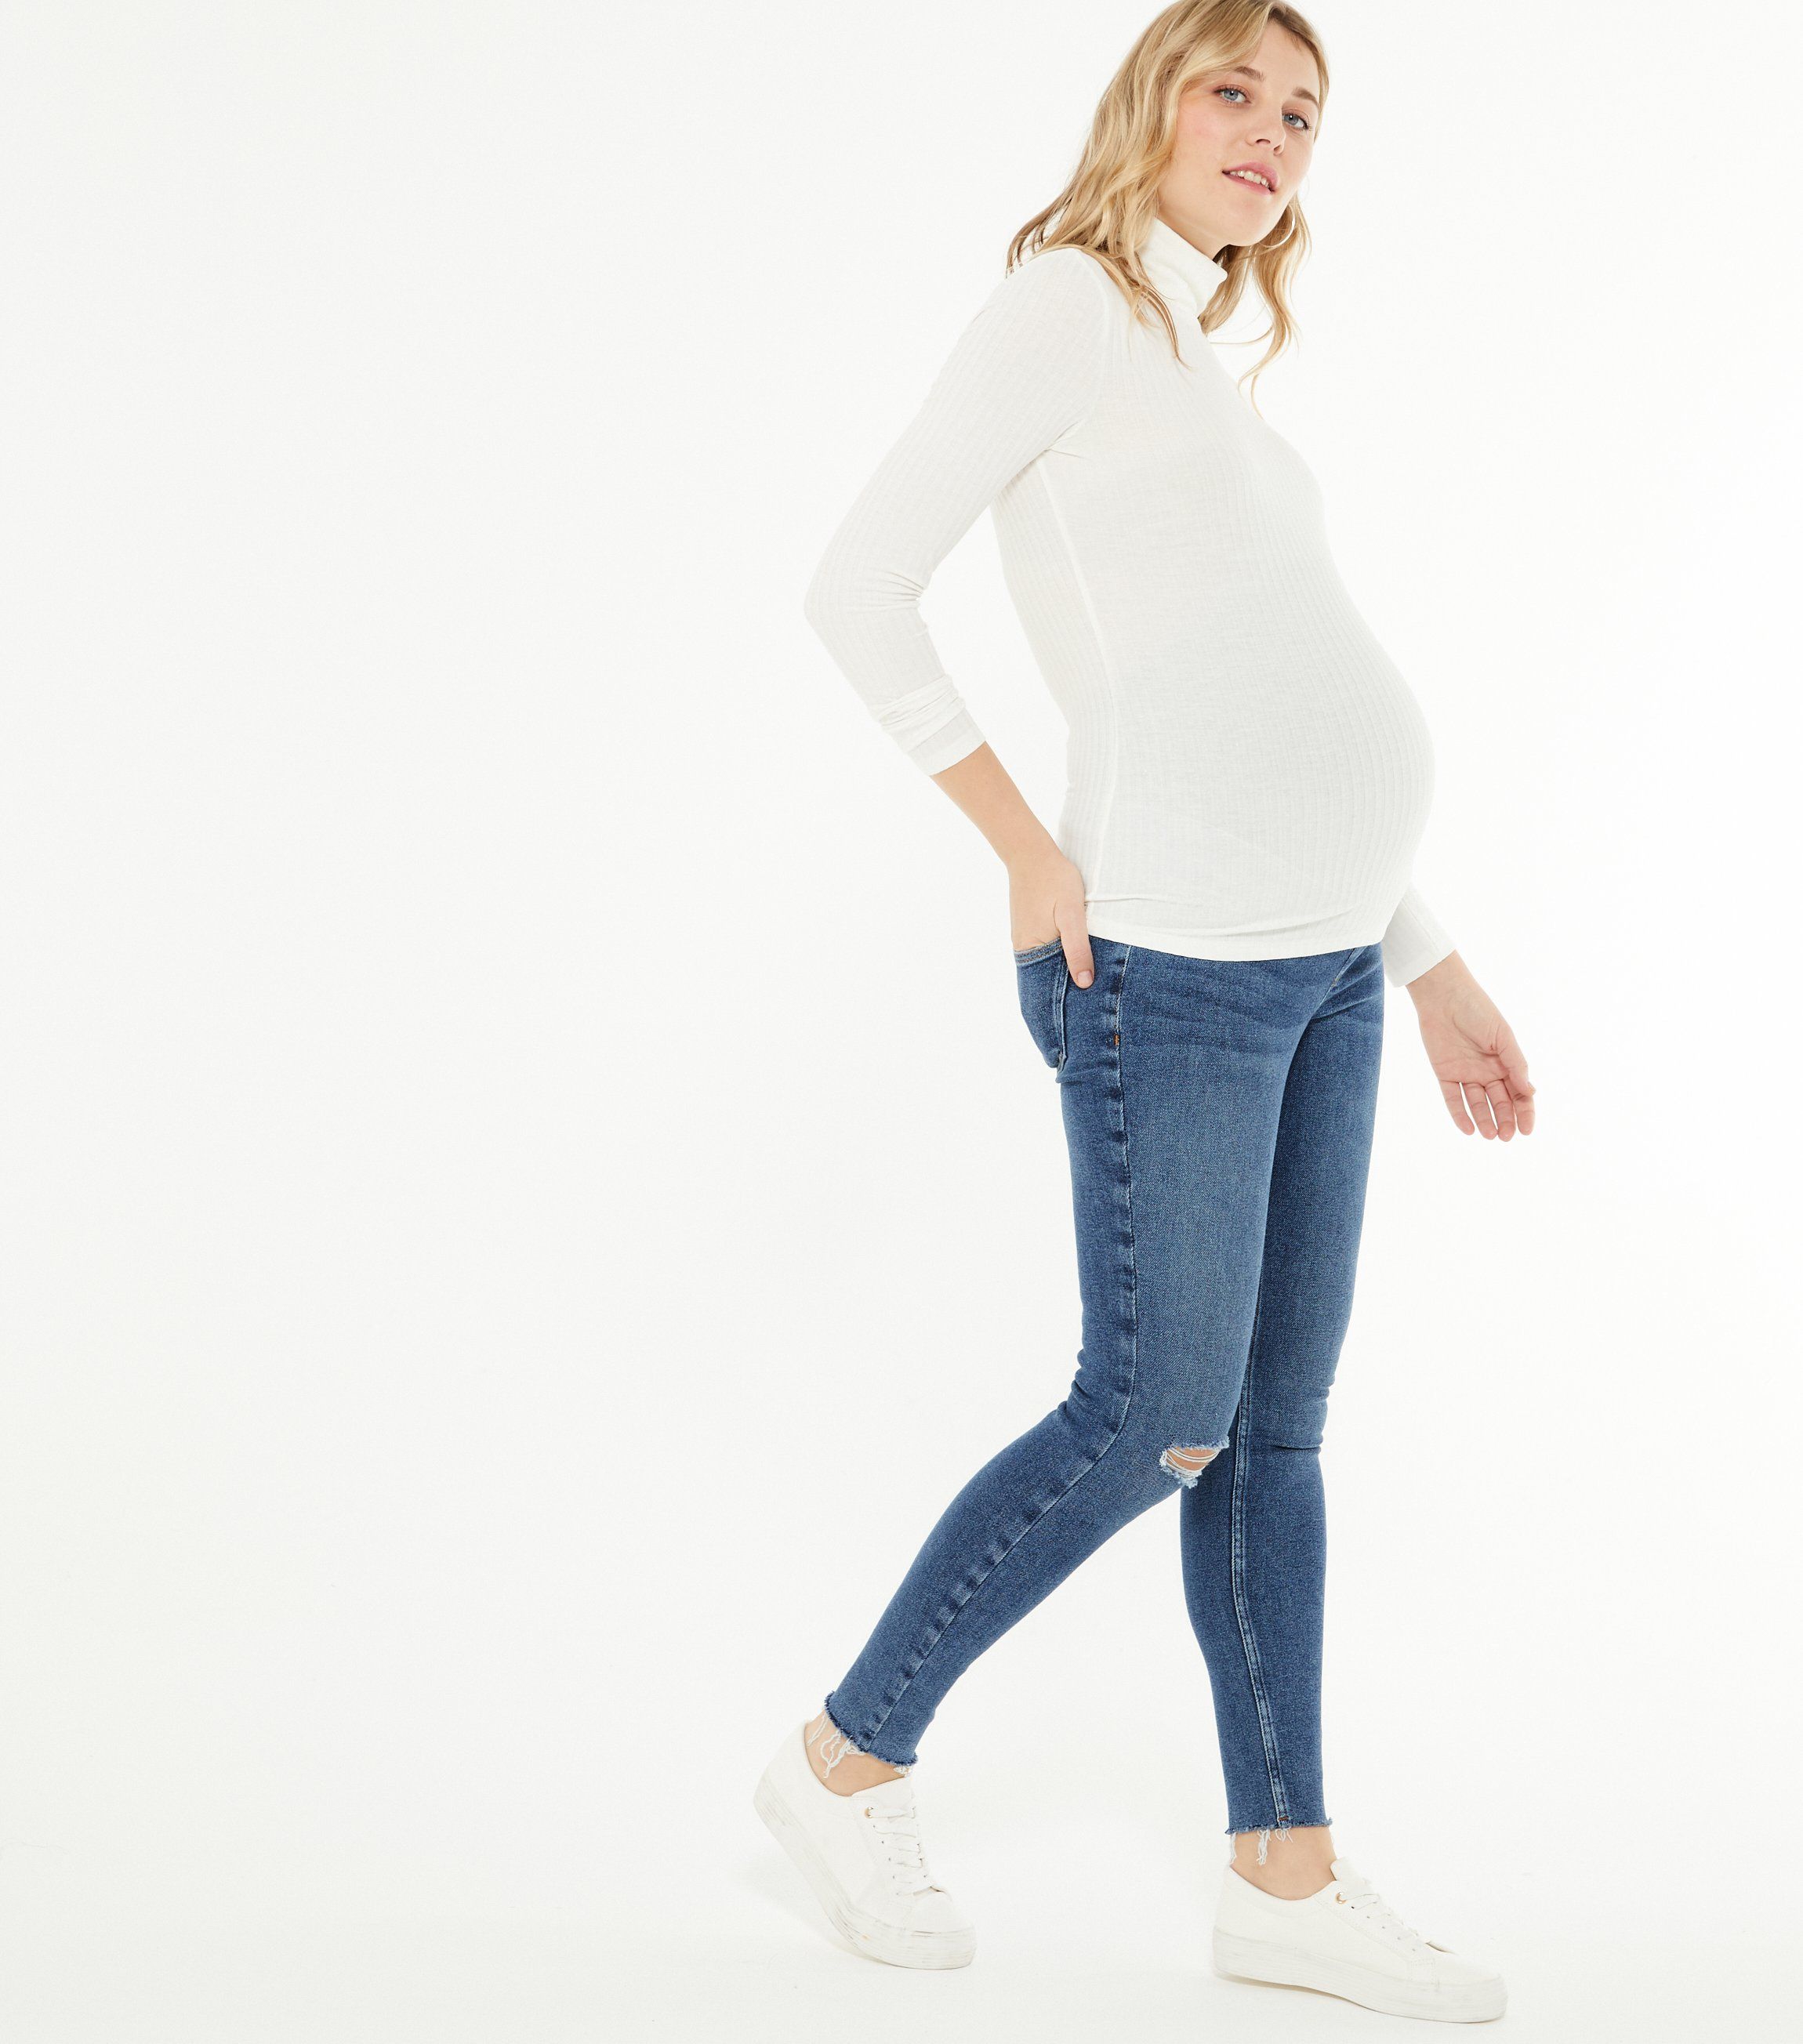 NEW LOOK Maternity JENNA Over Bump SPLIT HEM Skinny Jeans UK 20 EUR 48 